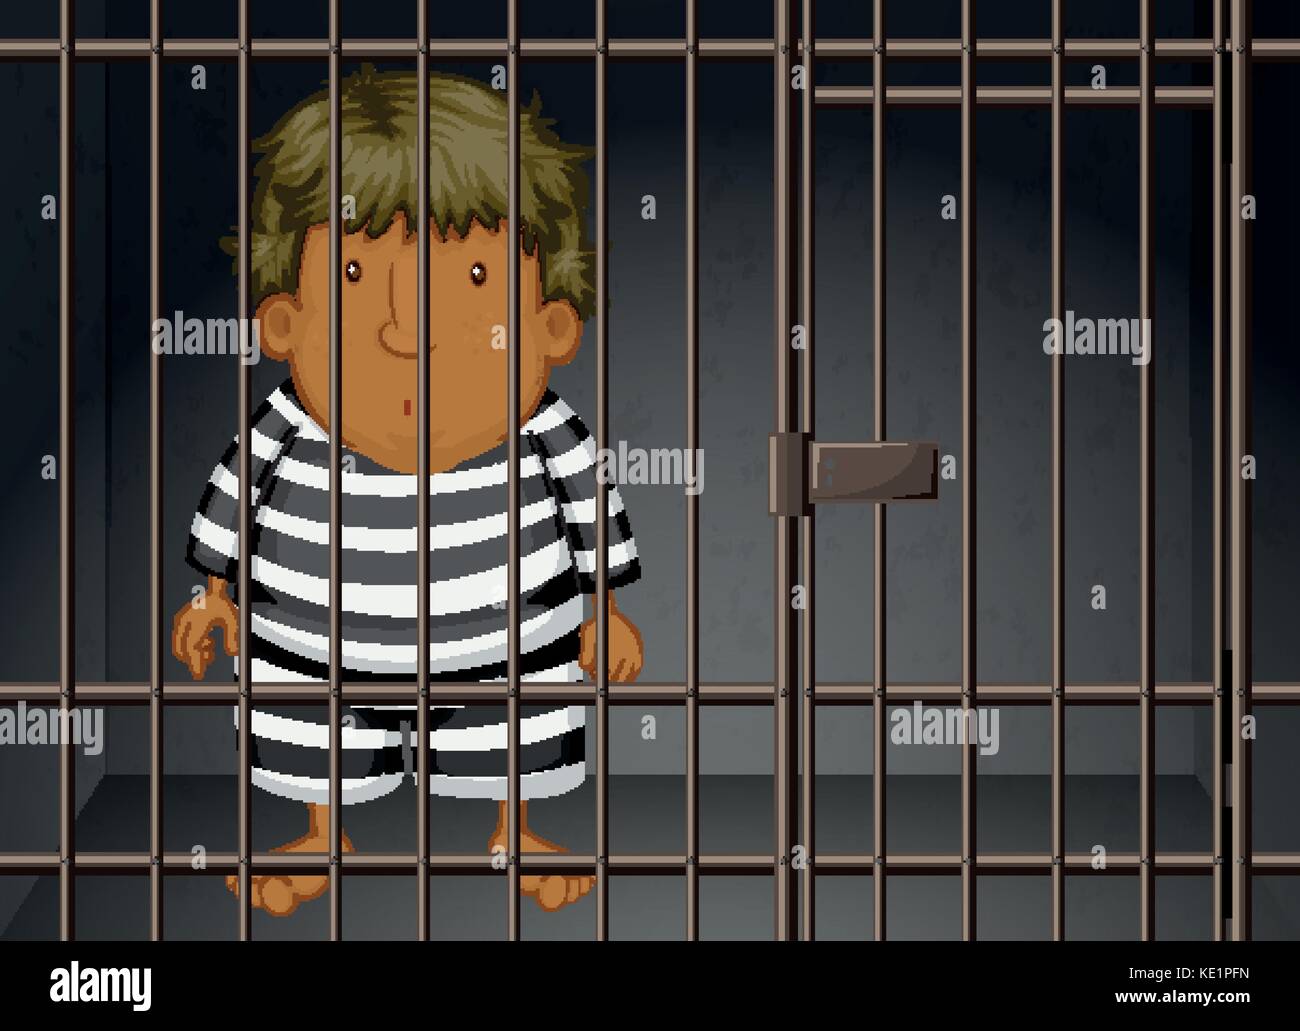 child in jail cartoon